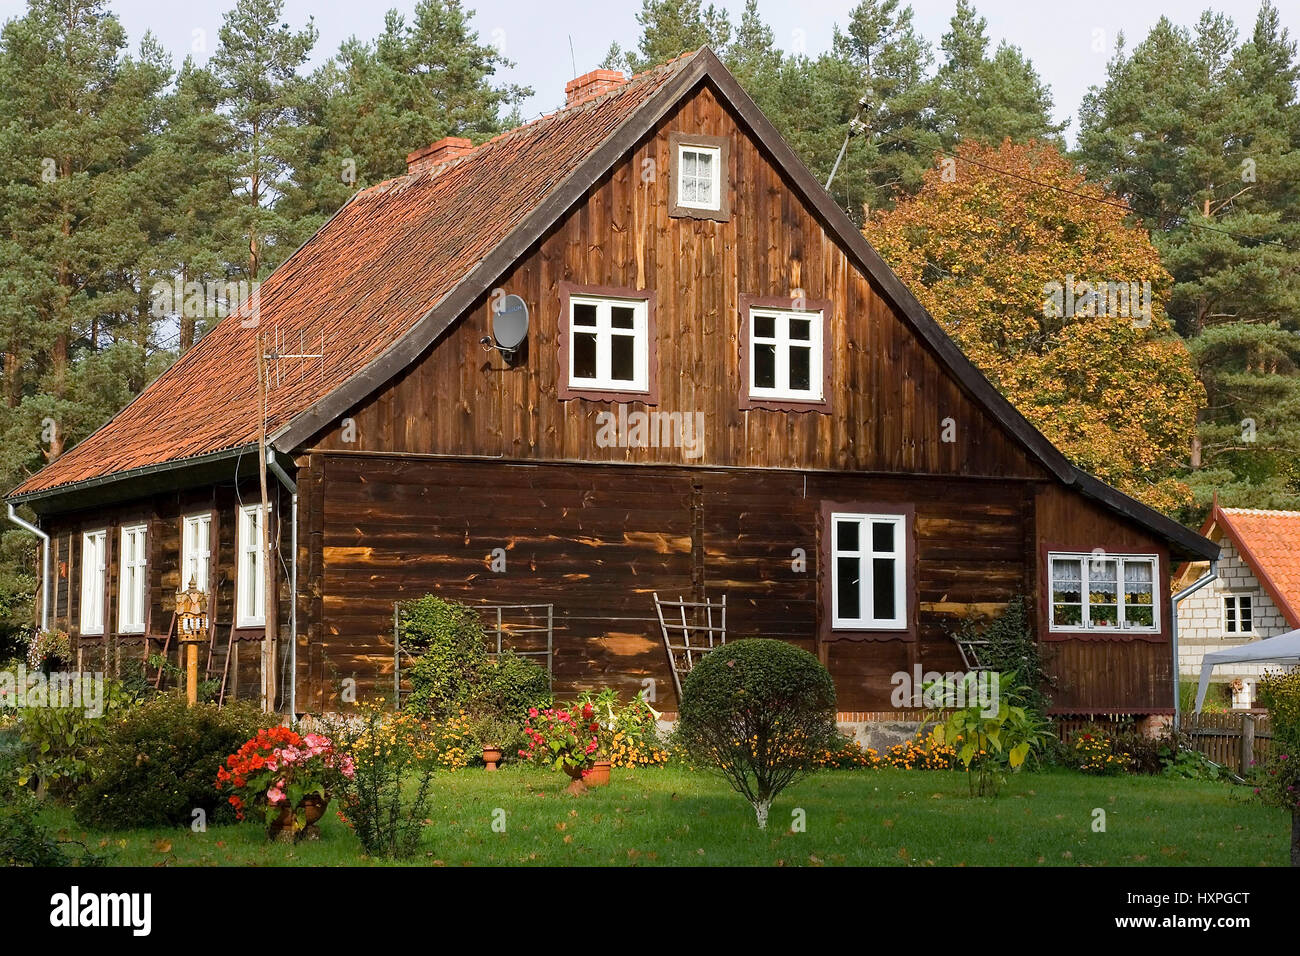 Masurisches timber house in autumn. Masuria Poland, Masurisches Holzhaus im Herbst. Masuren Polen Stock Photo